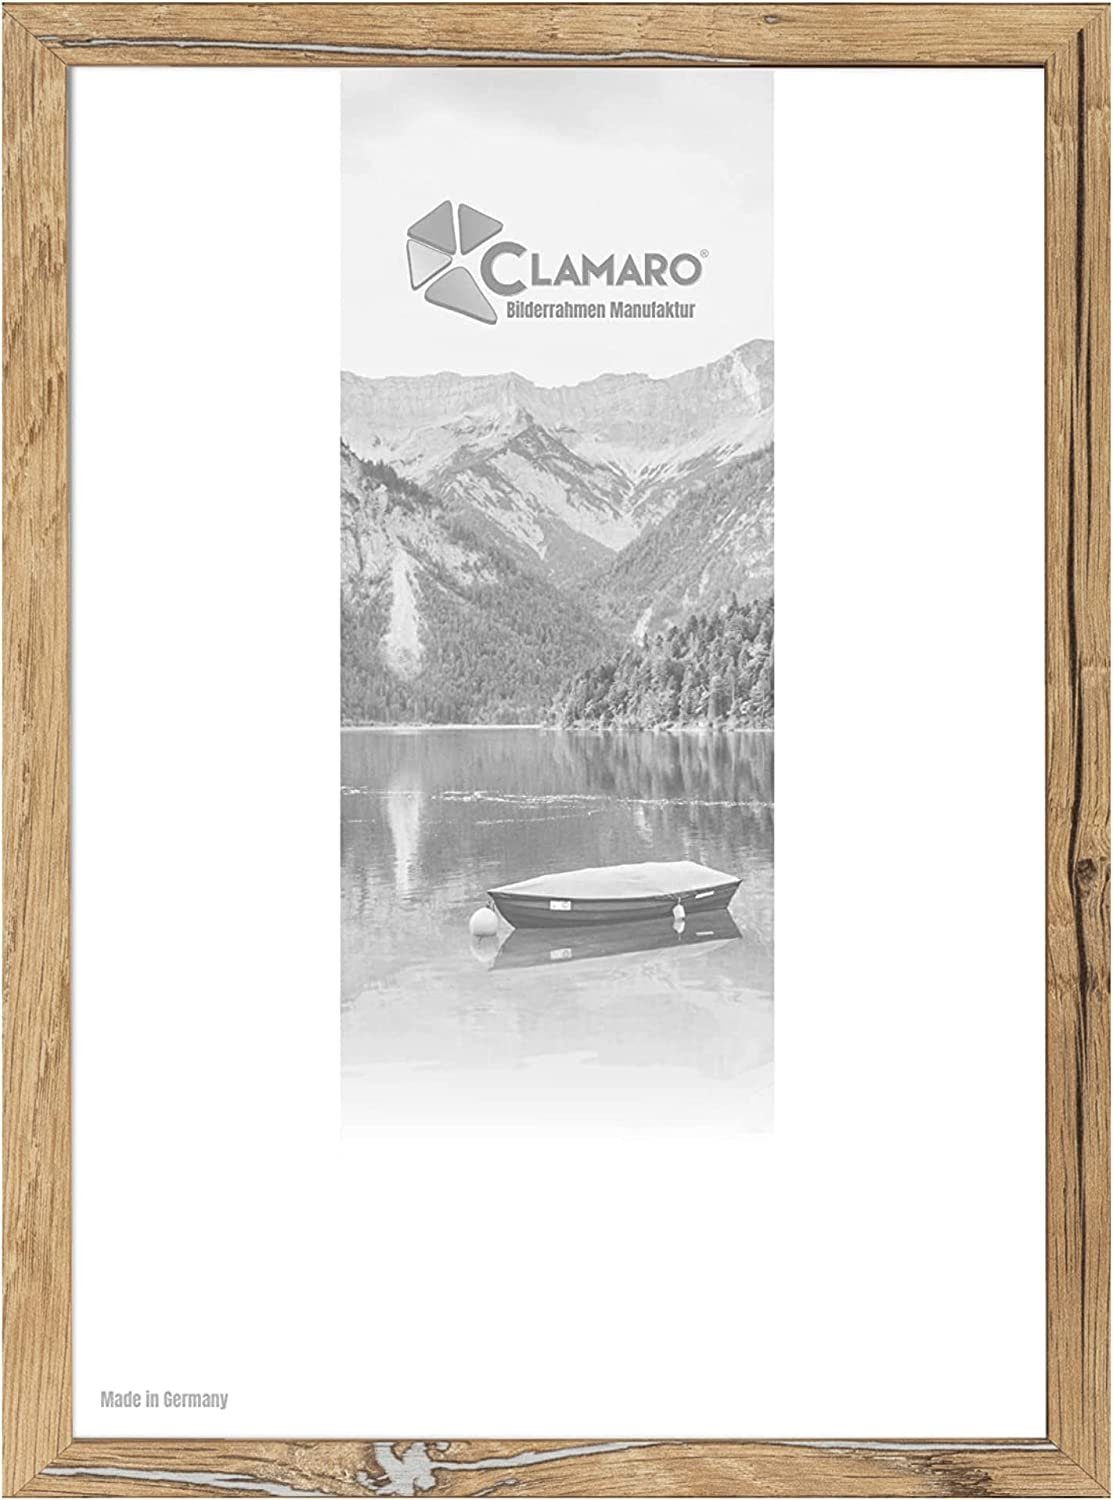 Clamaro Bilderrahmen Bilderrahmen Eiche Altholz CLAMARO Collage nach Maß FSC® Holz Modern eckig M3016 100x130 in Eiche Altholz